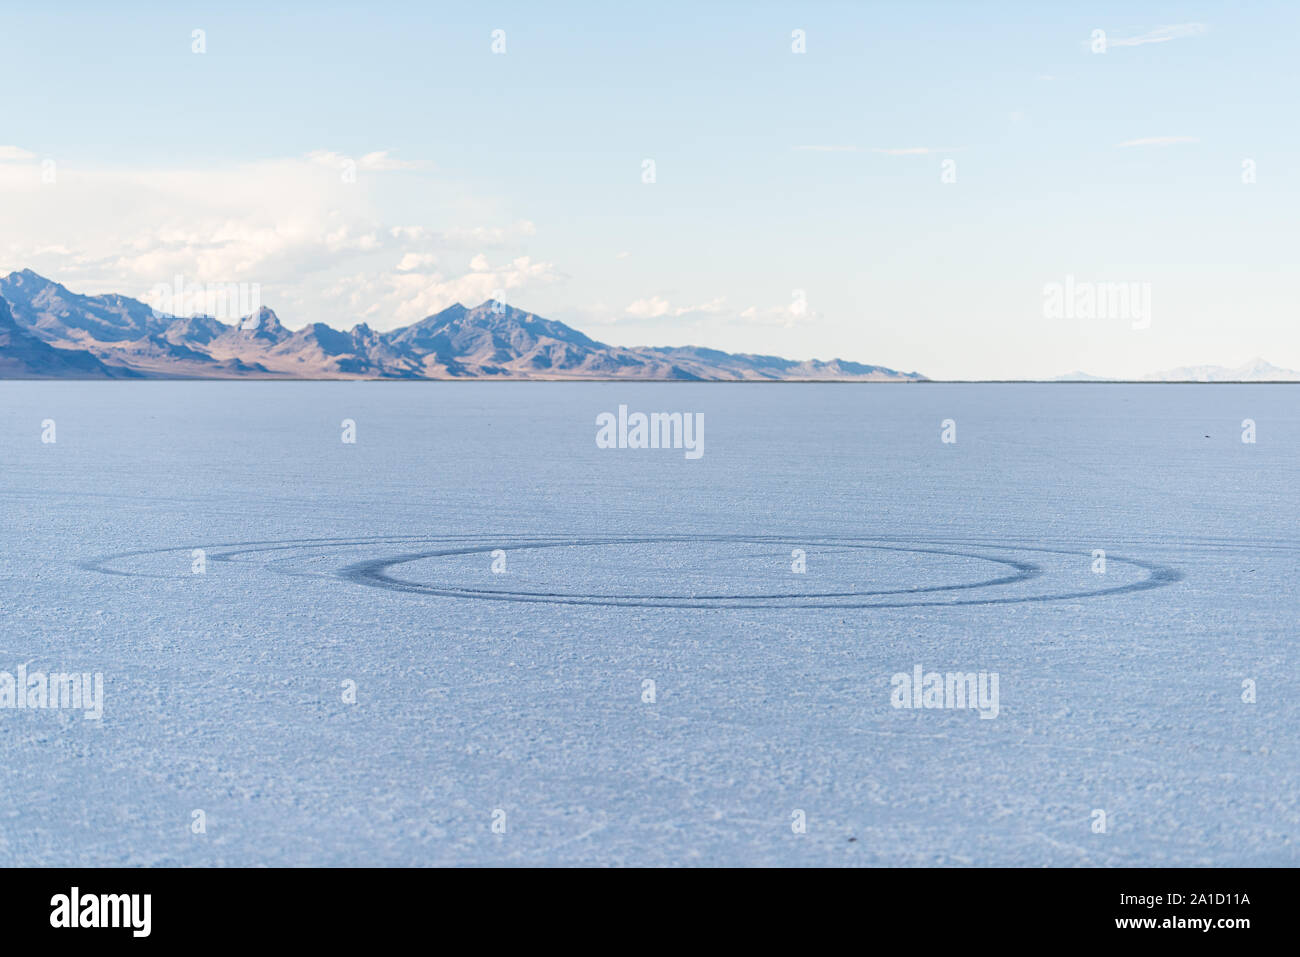 View of car tire marks tracks on White Bonneville Salt Flats near Salt Lake City, Utah during sunset Stock Photo